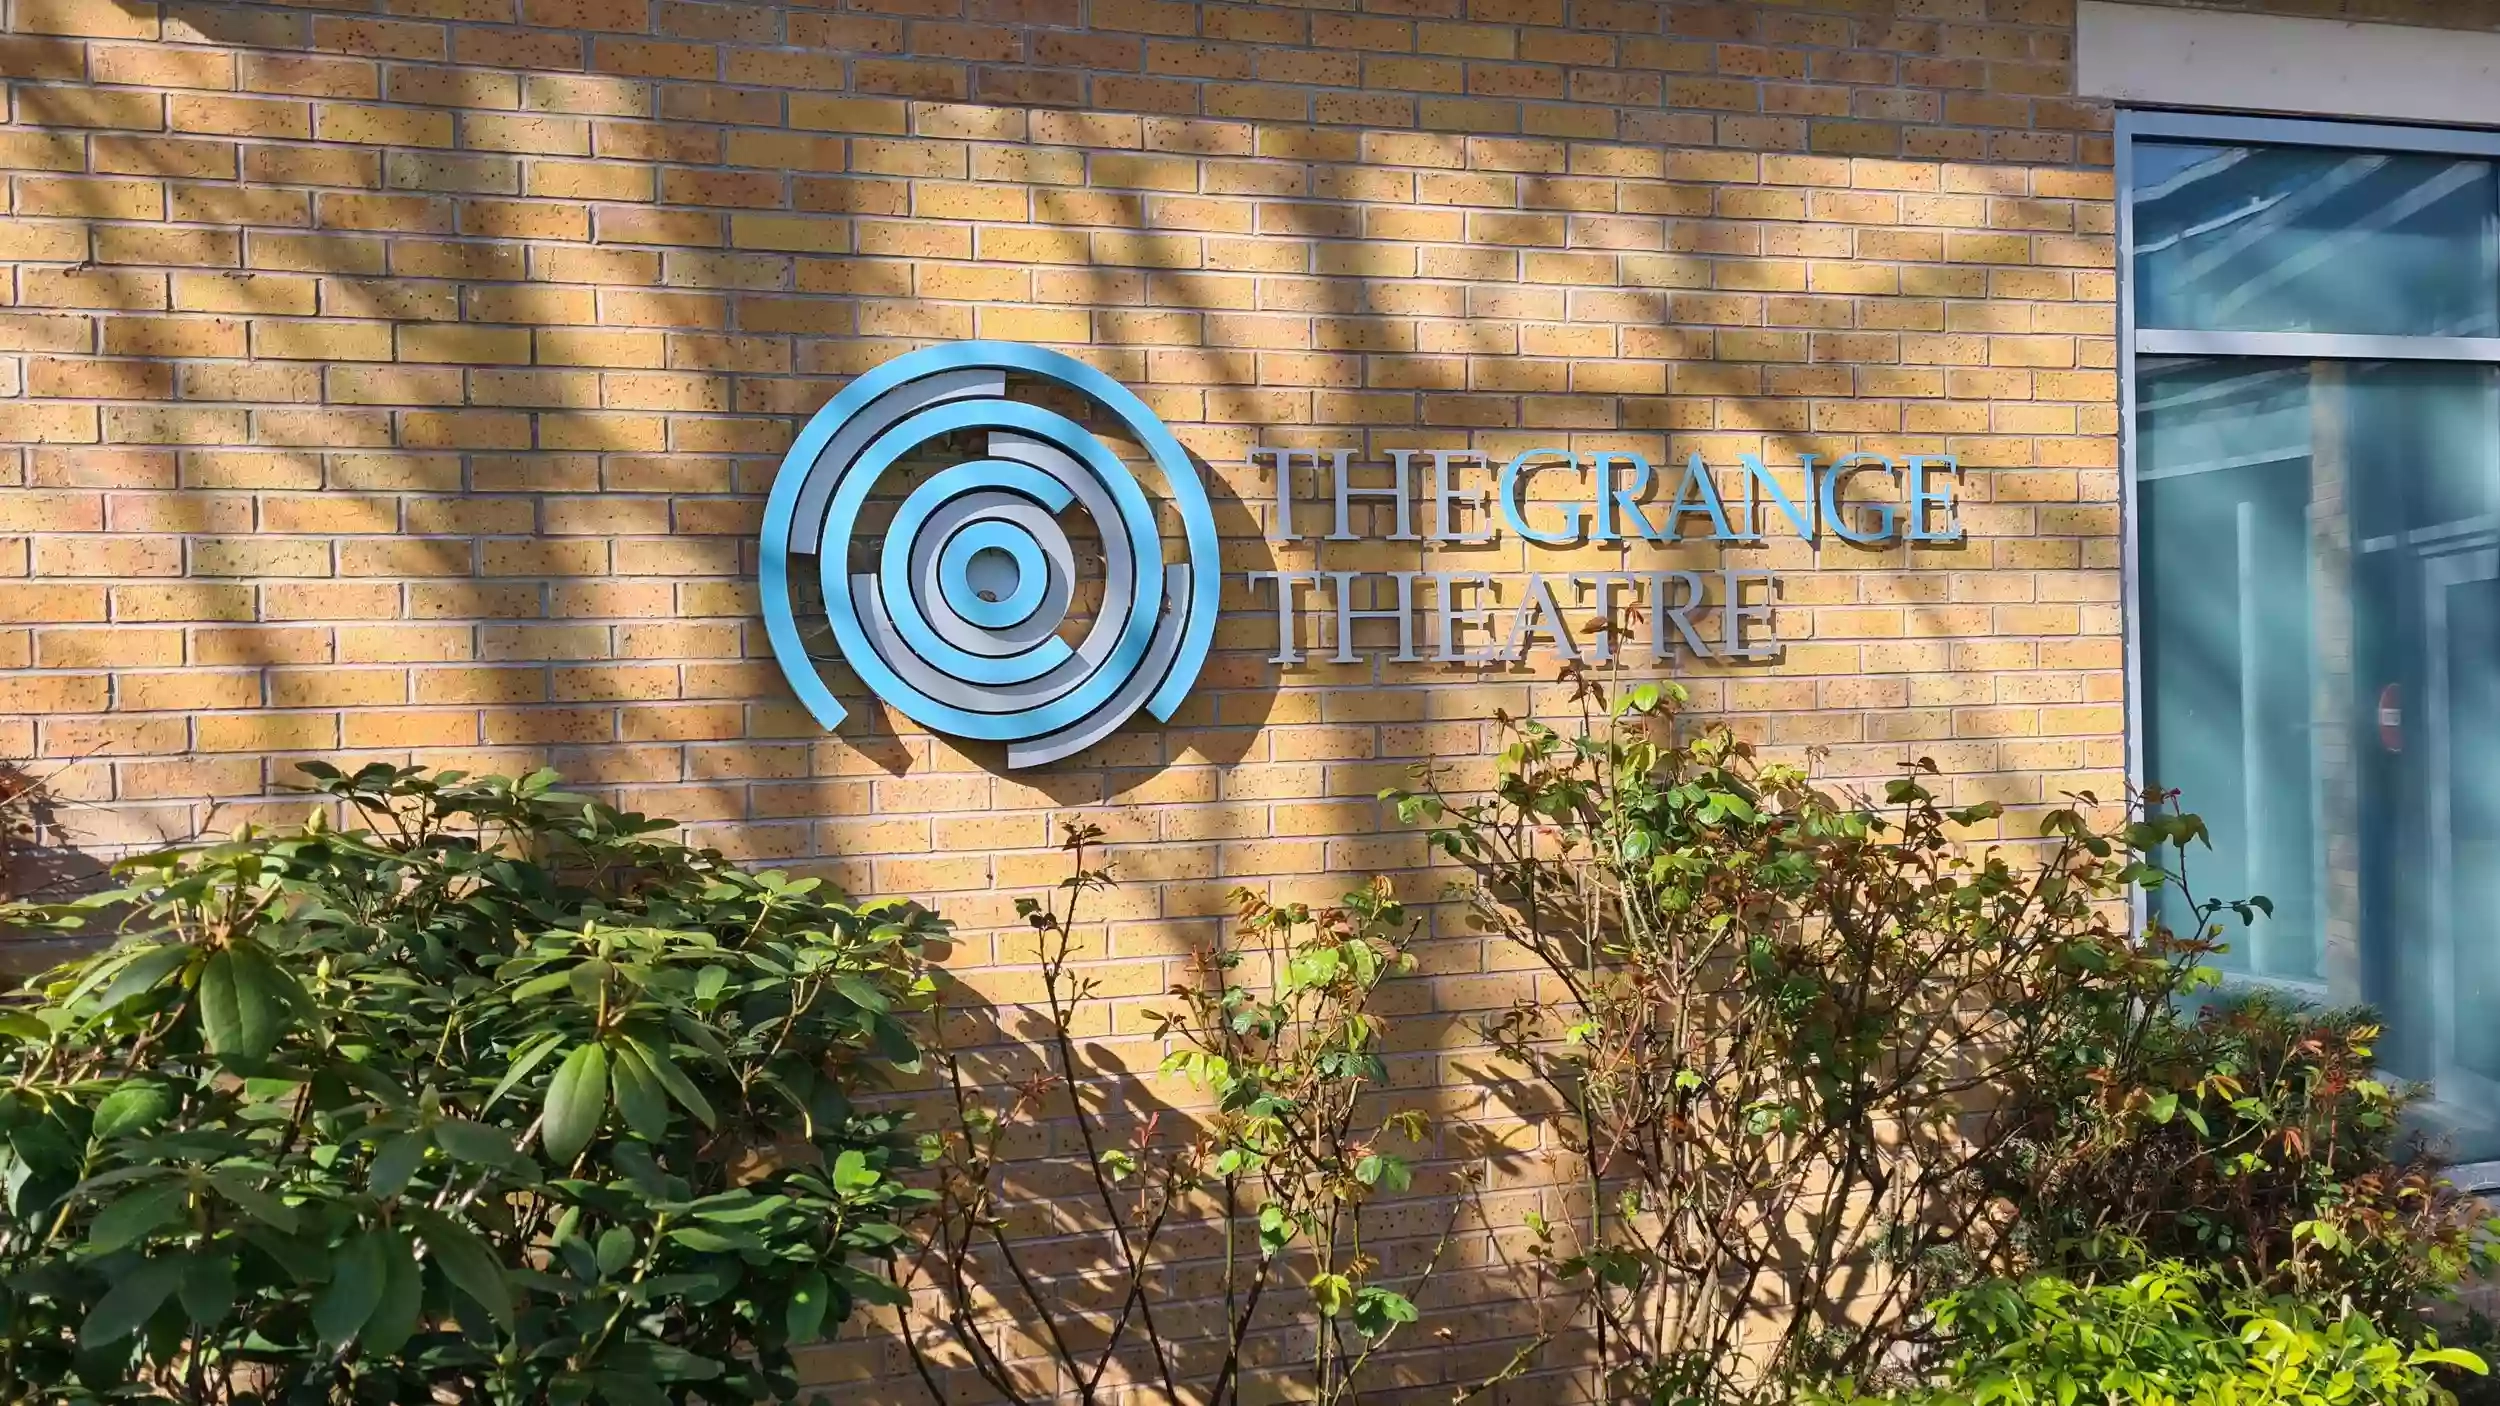 The Grange Theatre